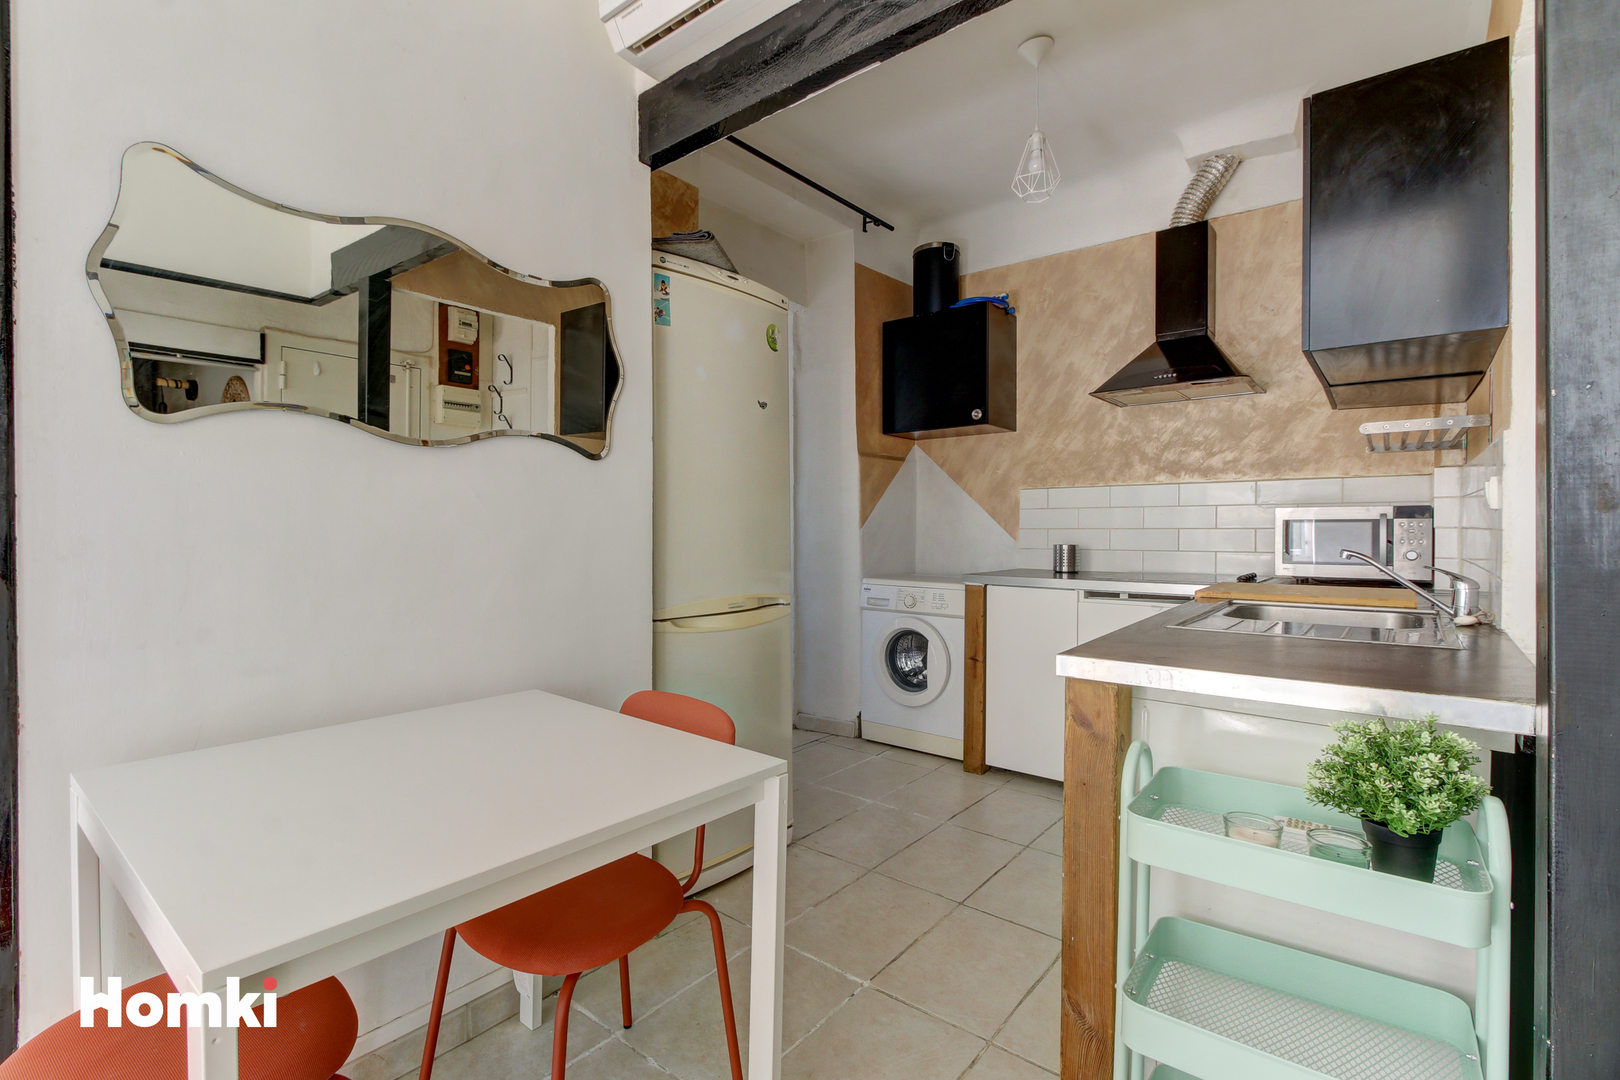 Homki - Vente Appartement  de 31.0 m² à Marseille 13004